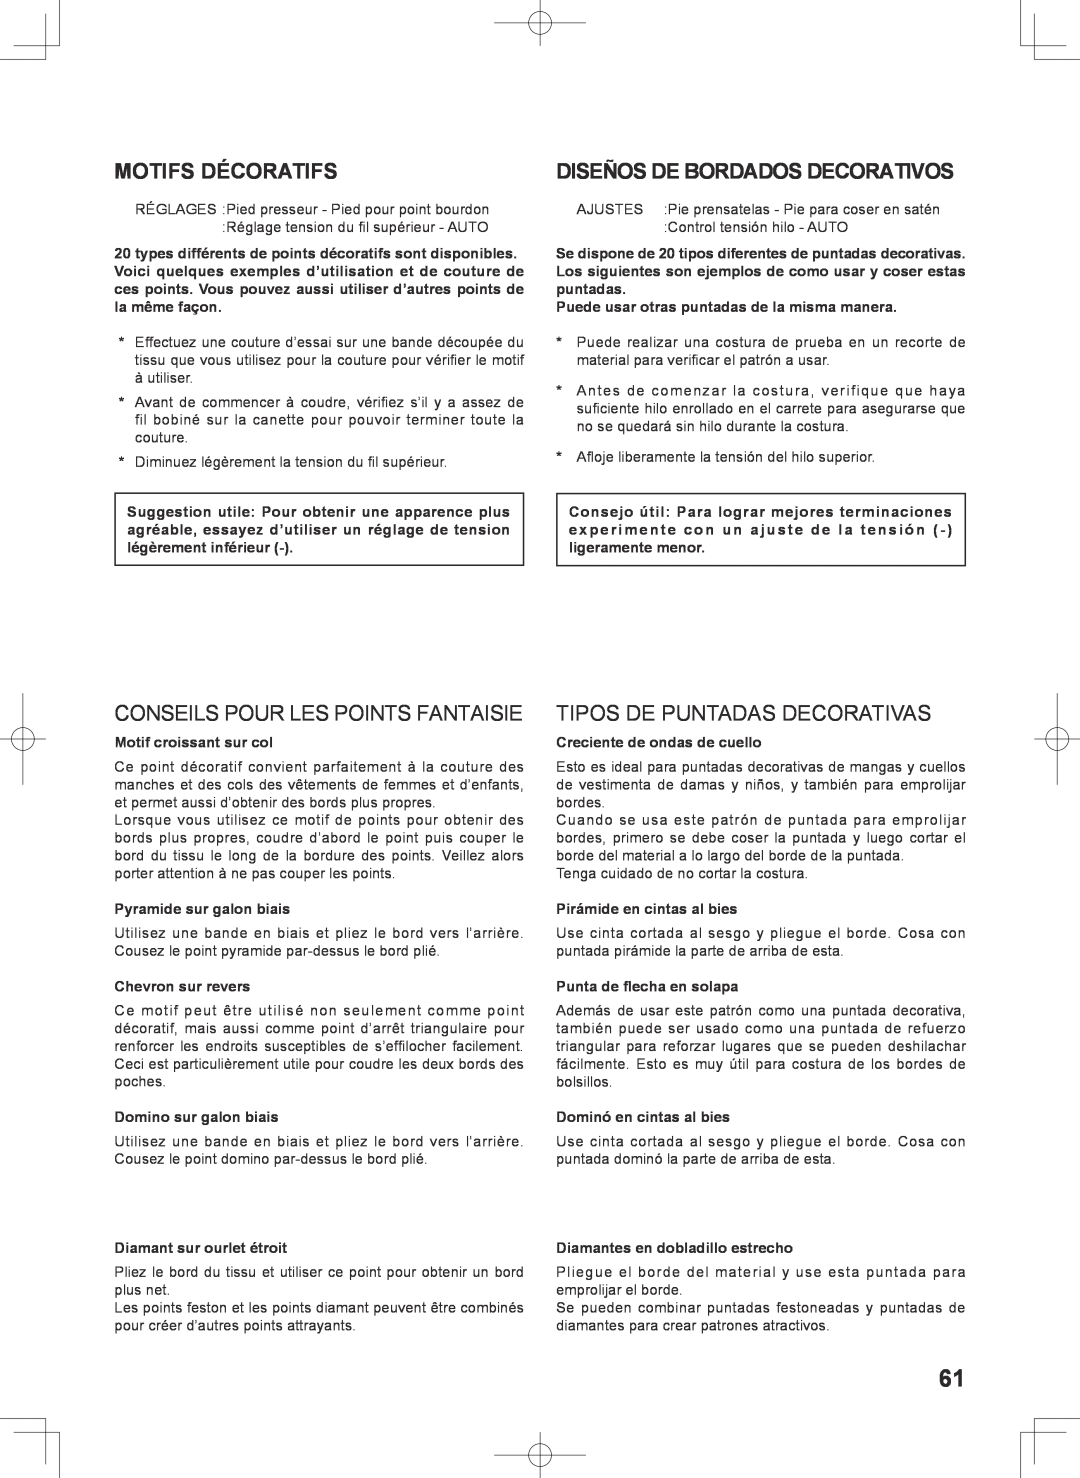 Singer 7467S instruction manual Motifs Décoratifs, Diseños De Bordados Decorativos, Conseils Pour Les Points Fantaisie 